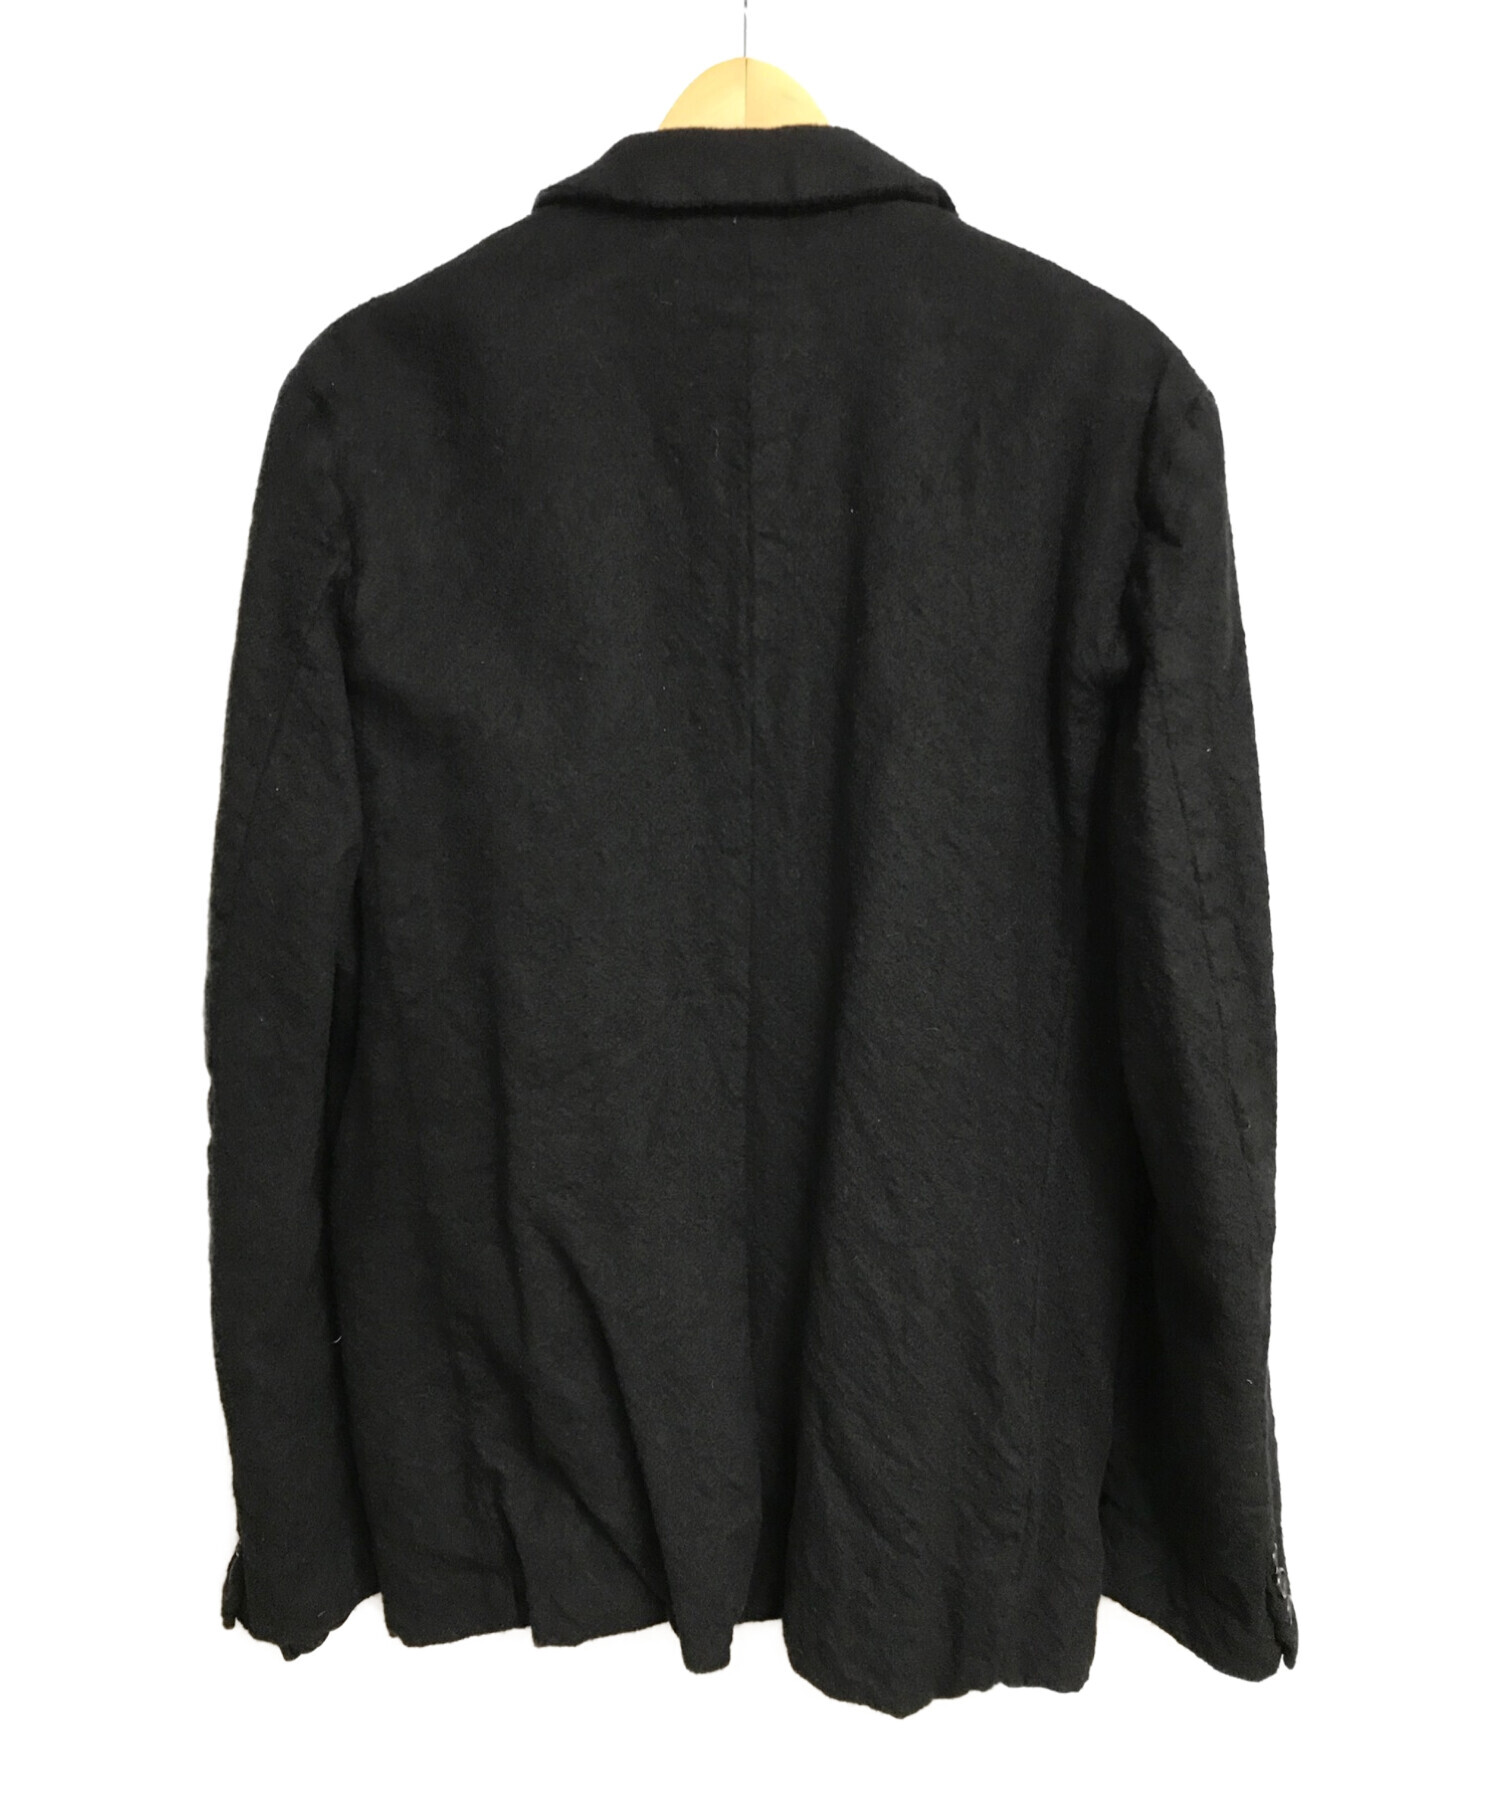 COMME des GARCONS HOMME (コムデギャルソン オム) ウール縮絨テーラードジャケット ブラック サイズ:S